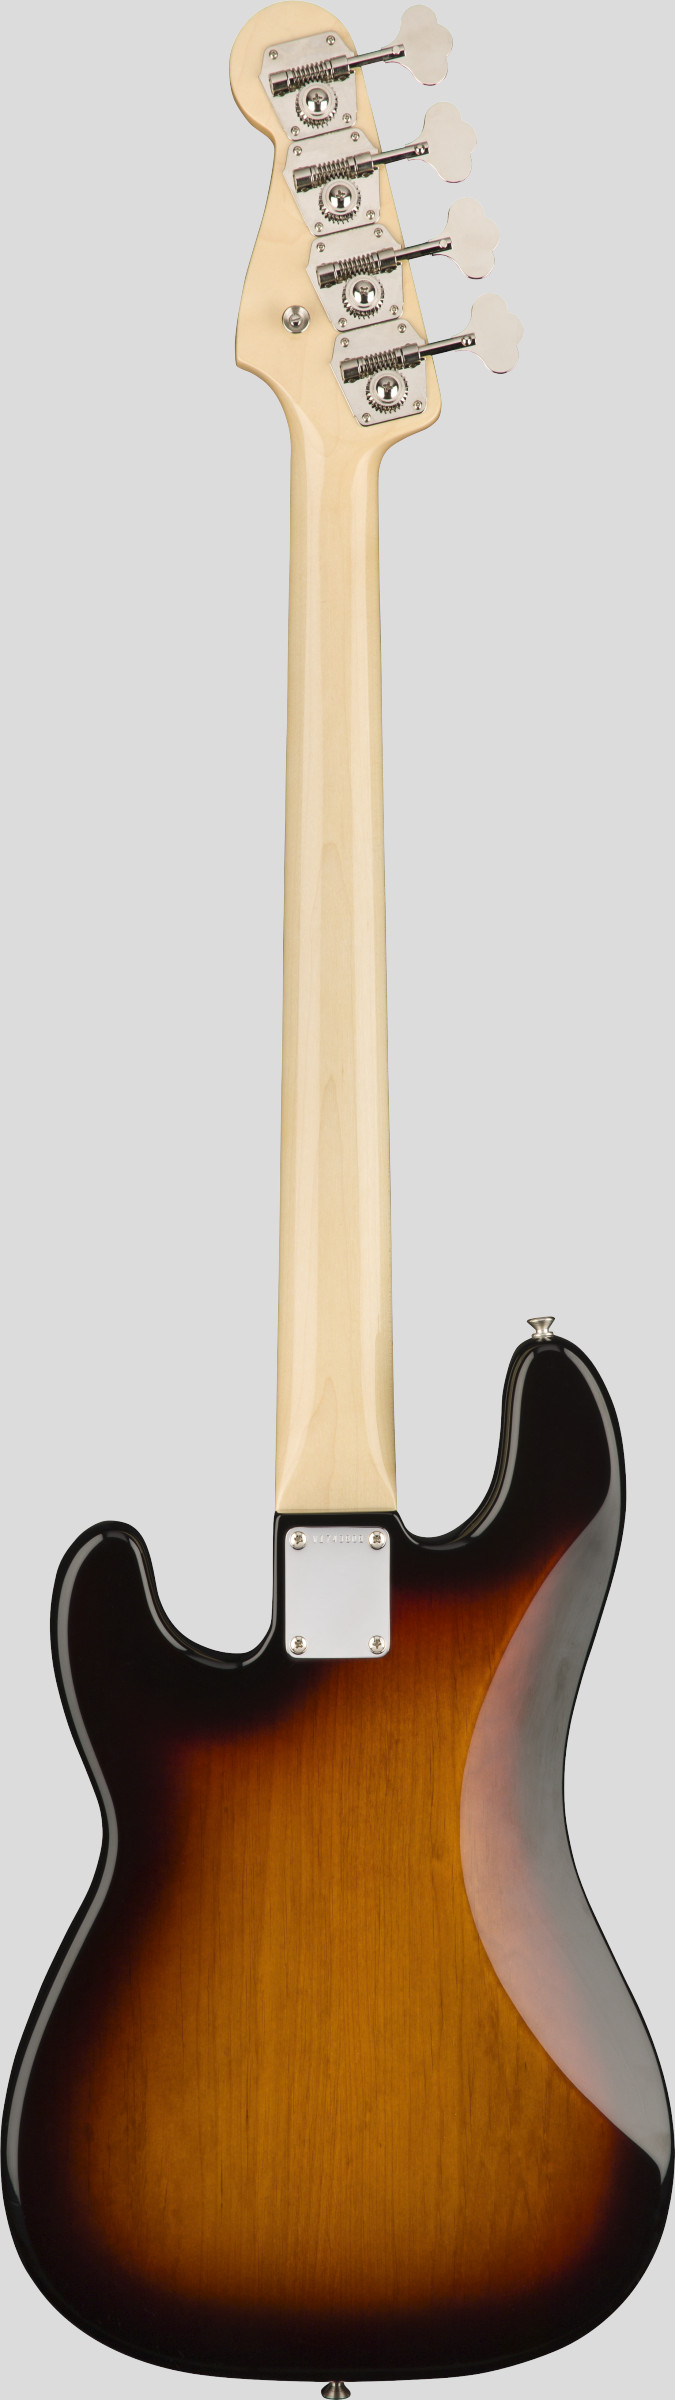 Fender American Original 60 Precision Bass 3-Color Sunburst (custodia Fender G&G Deluxe Hardshell Case) 0190120800 Made in Usa